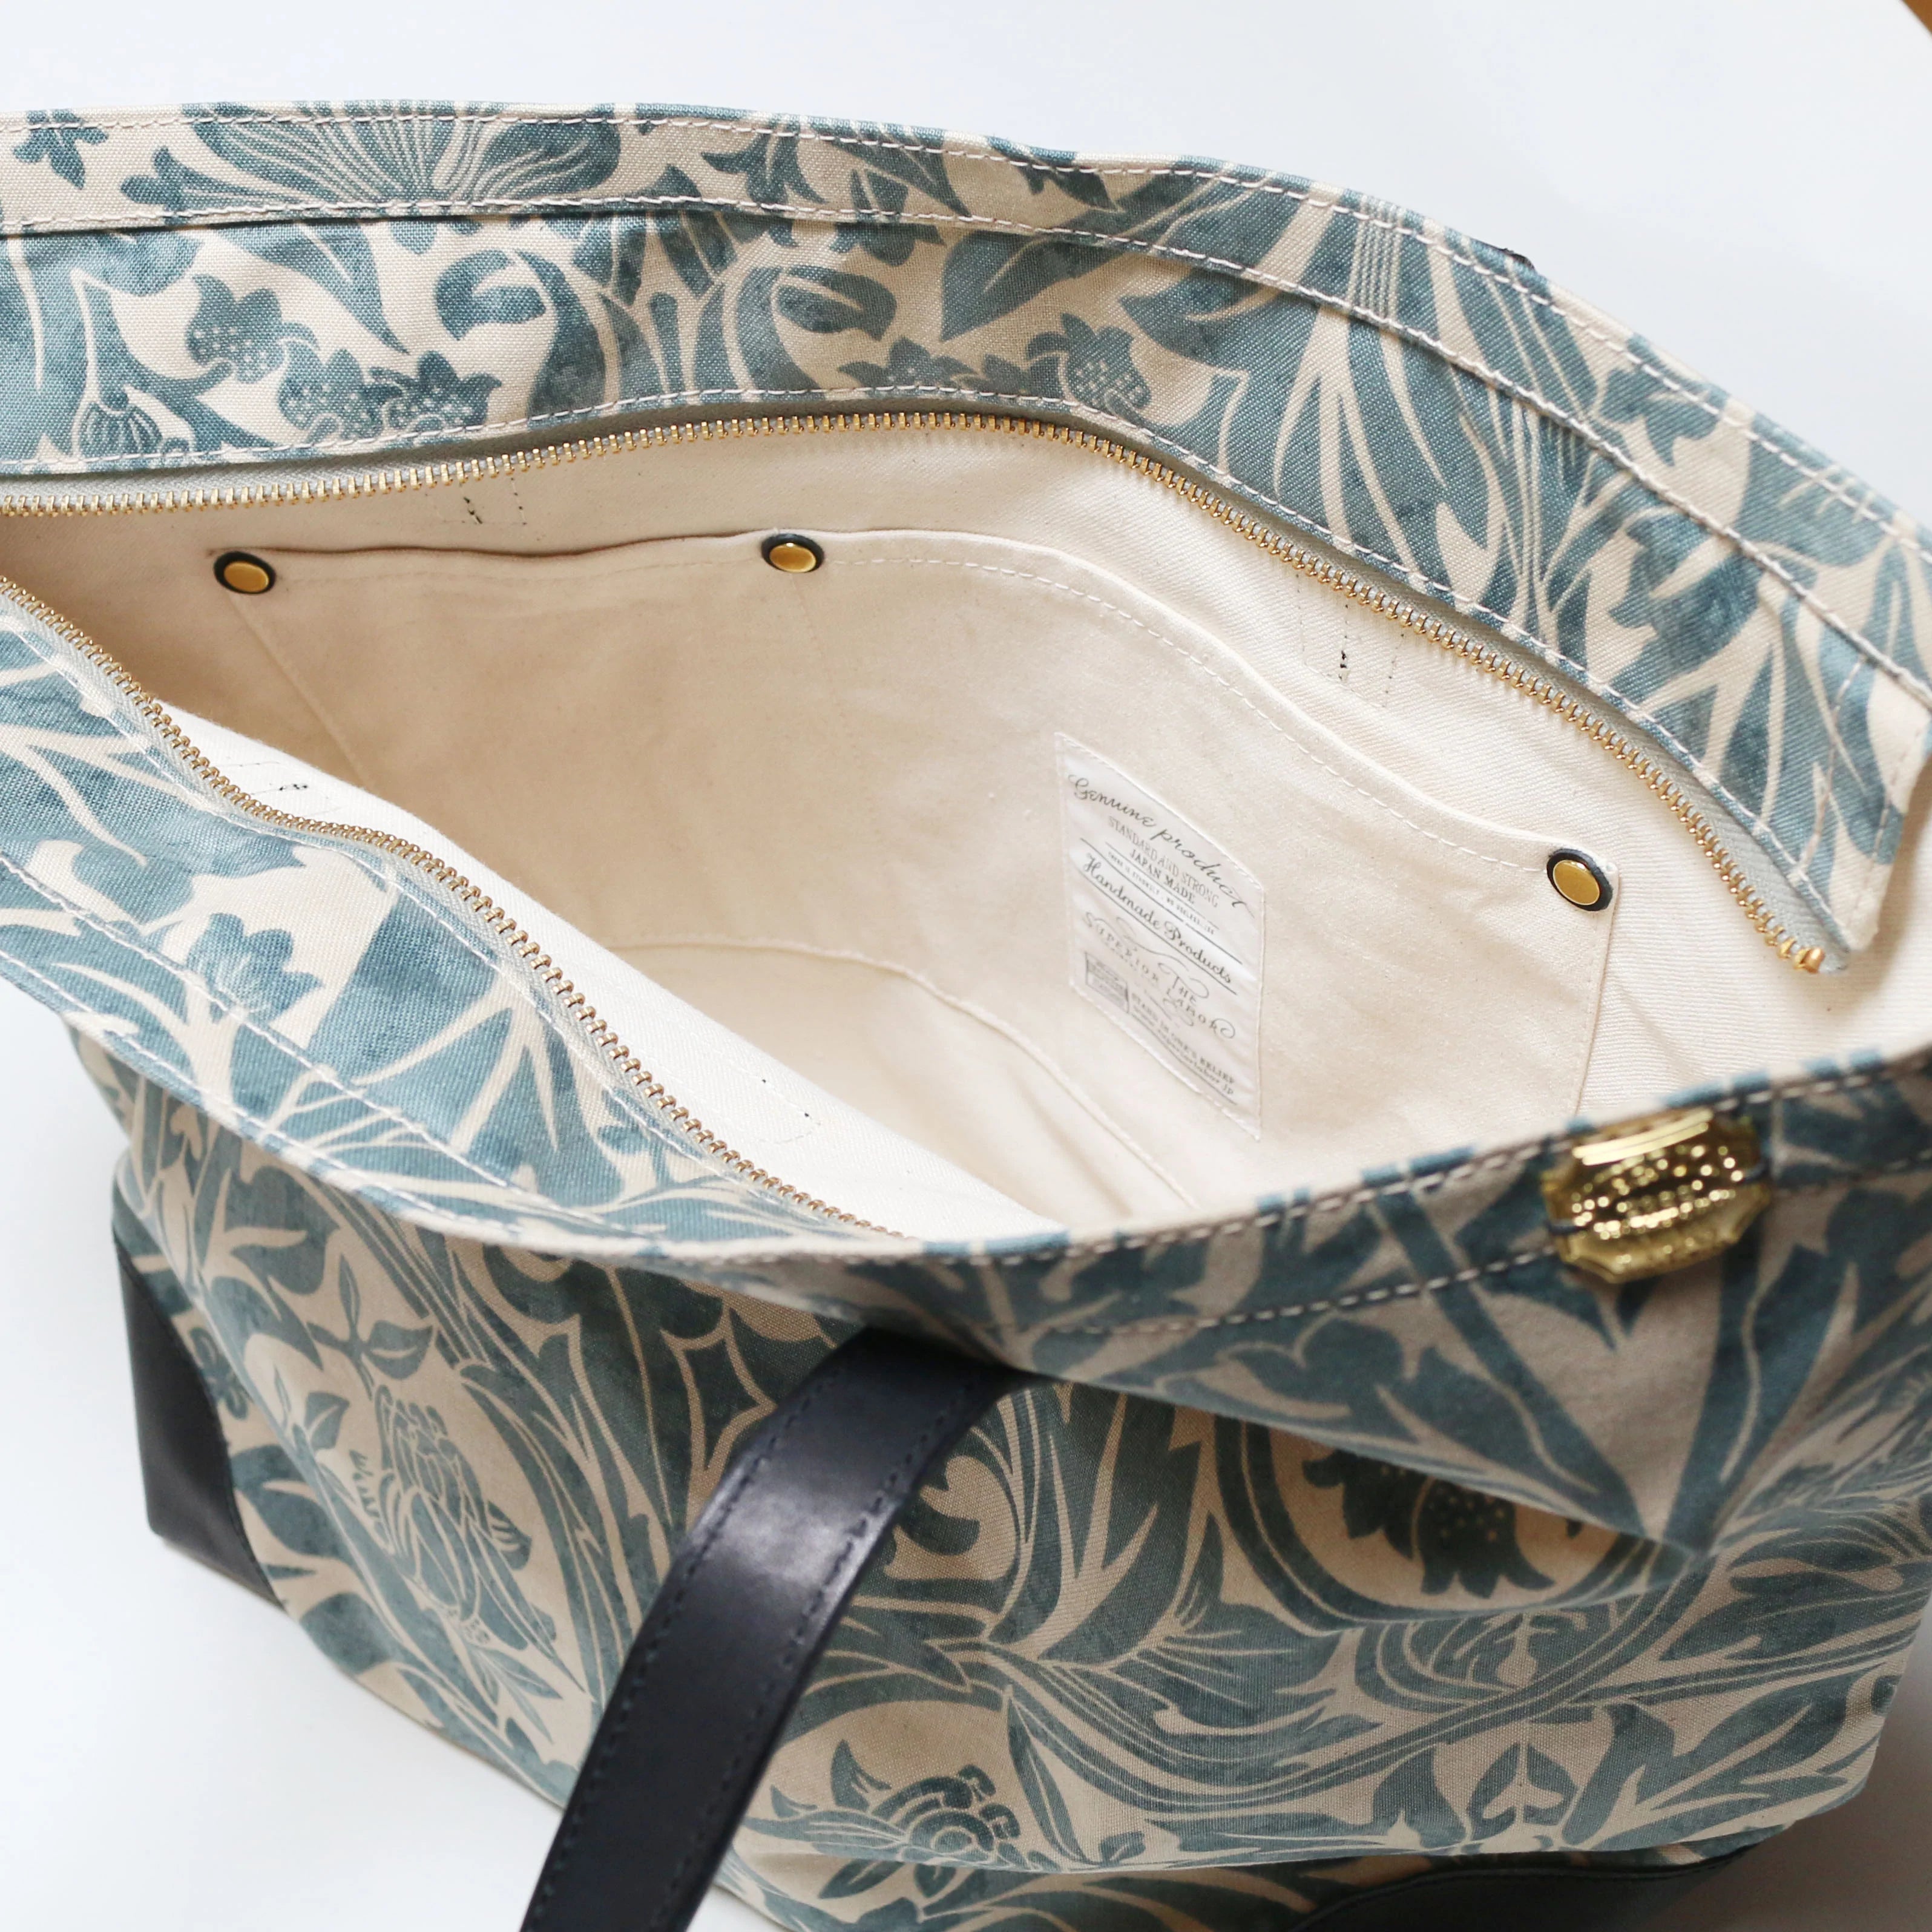 SL833 William Morris tote bag